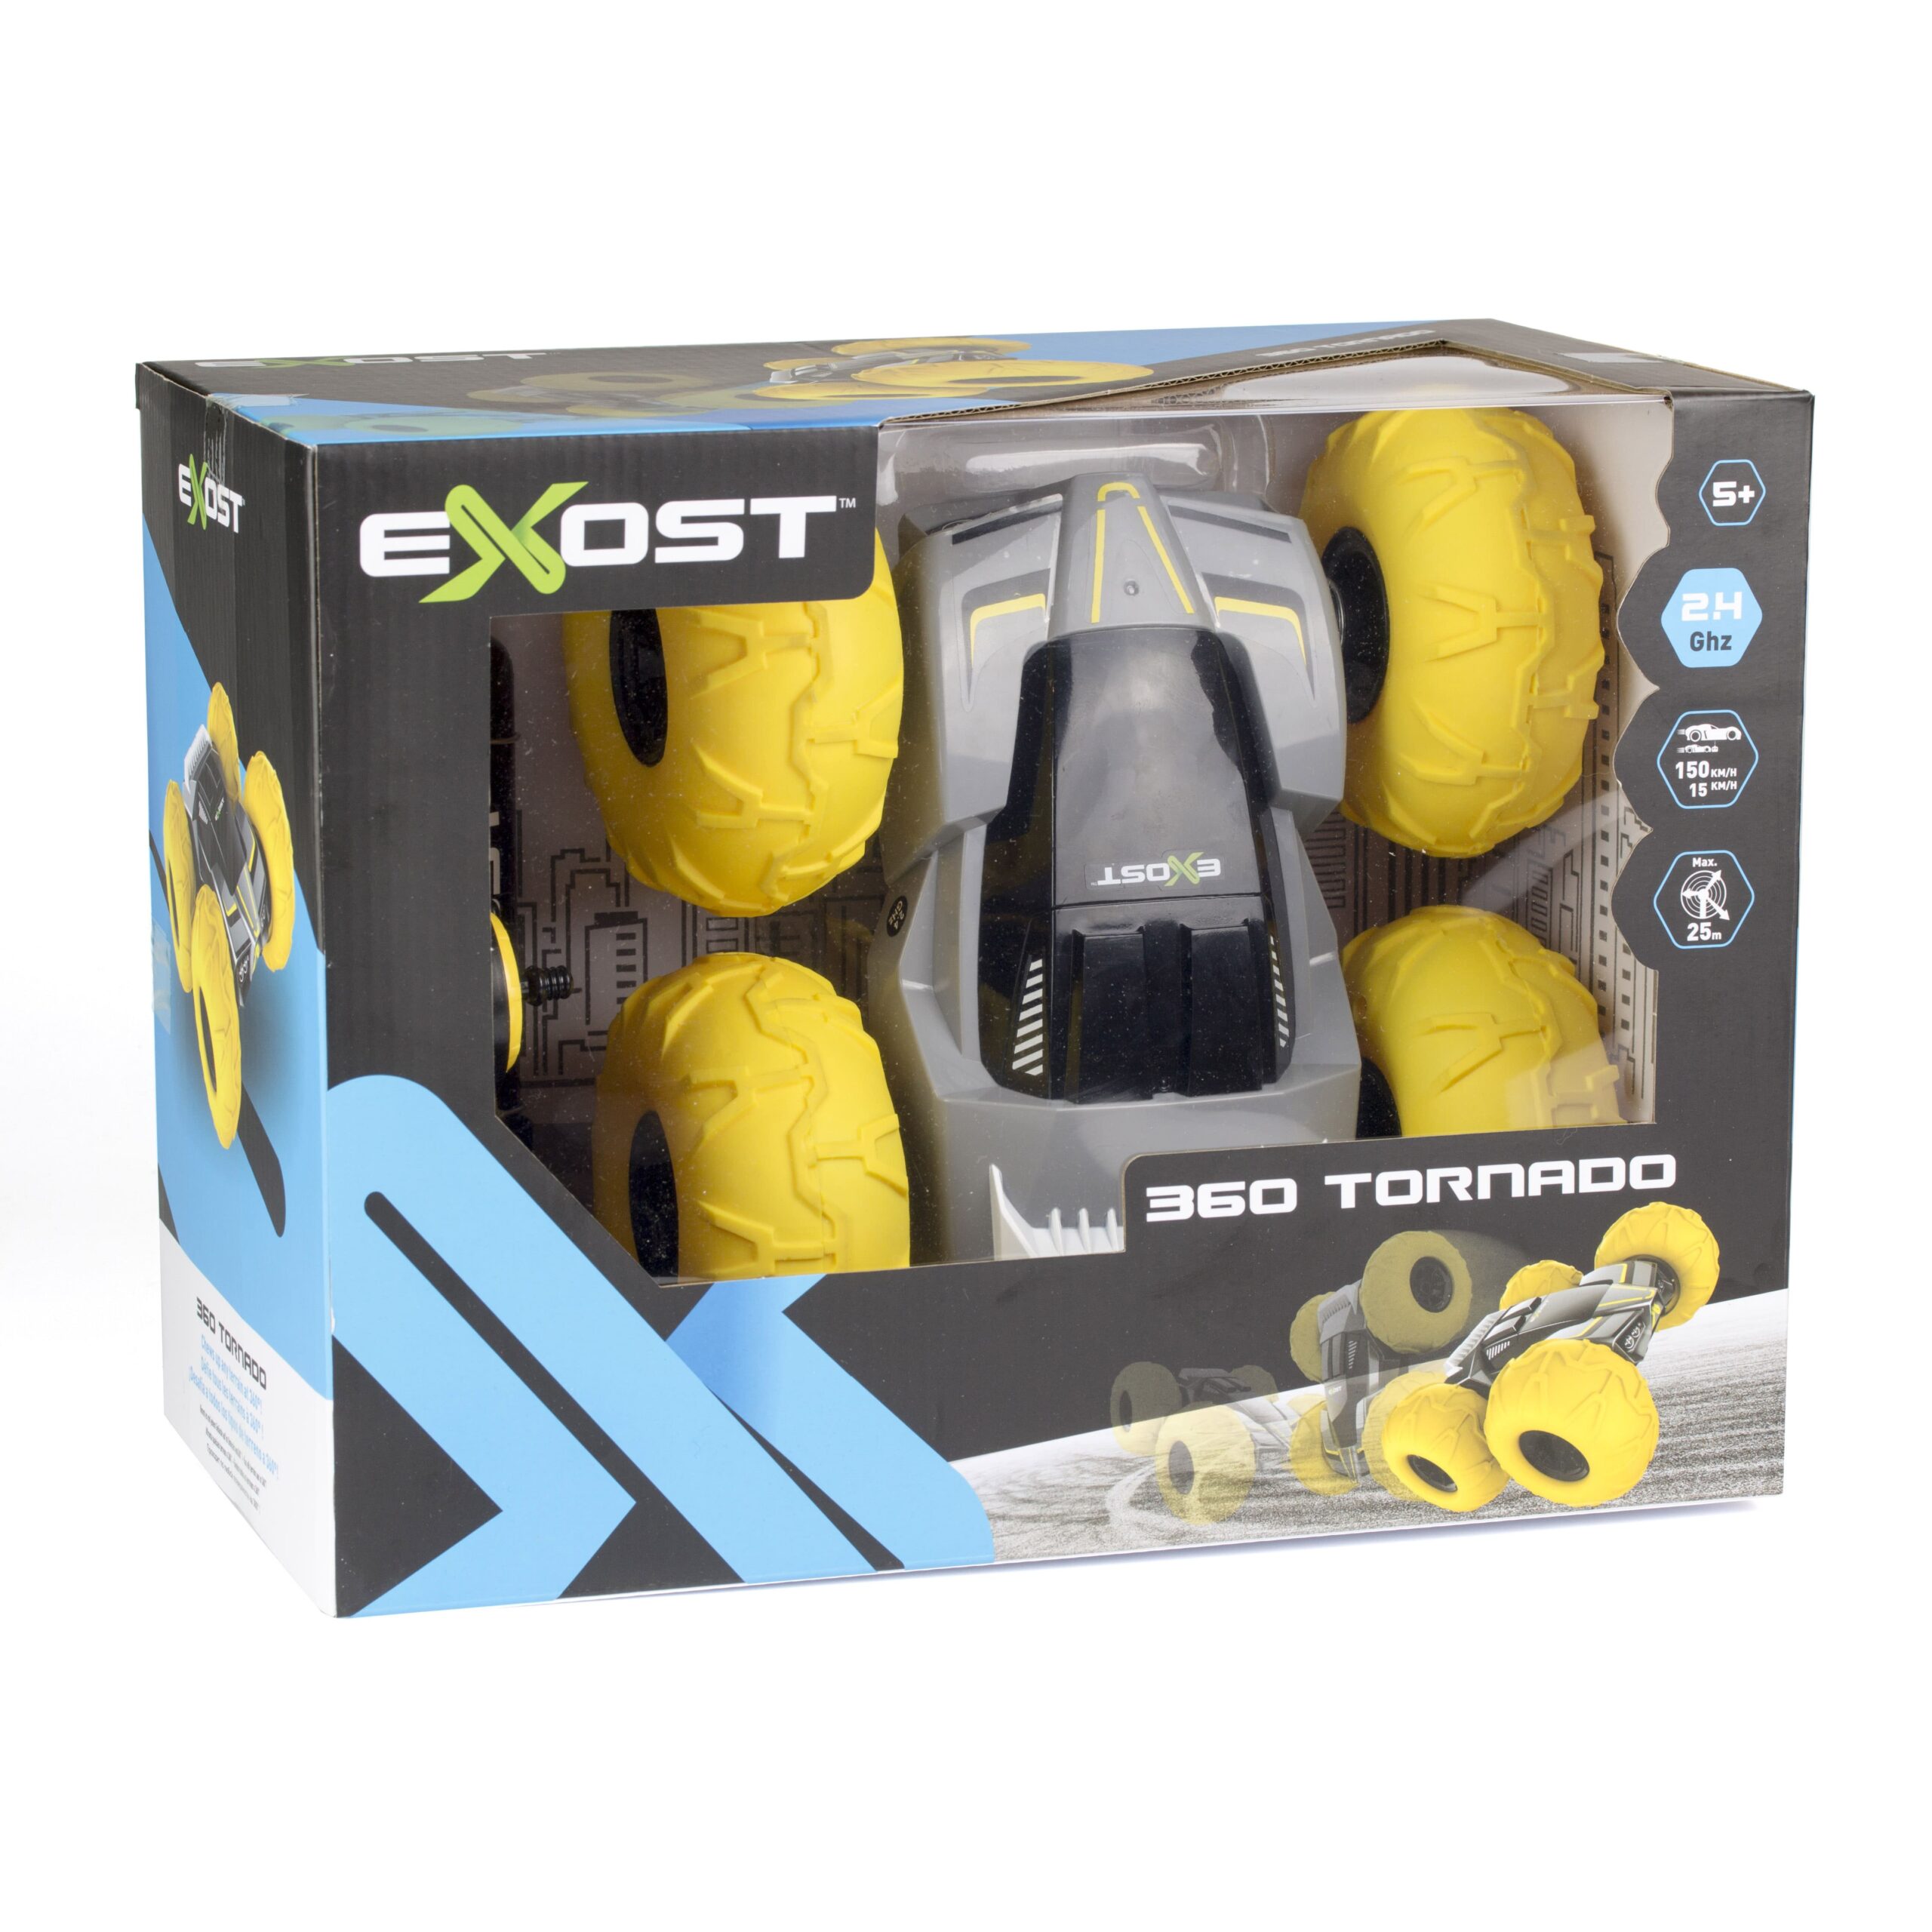 EXOST – Voiture télécommandée à batterie 360 TORNADO – Silverlit